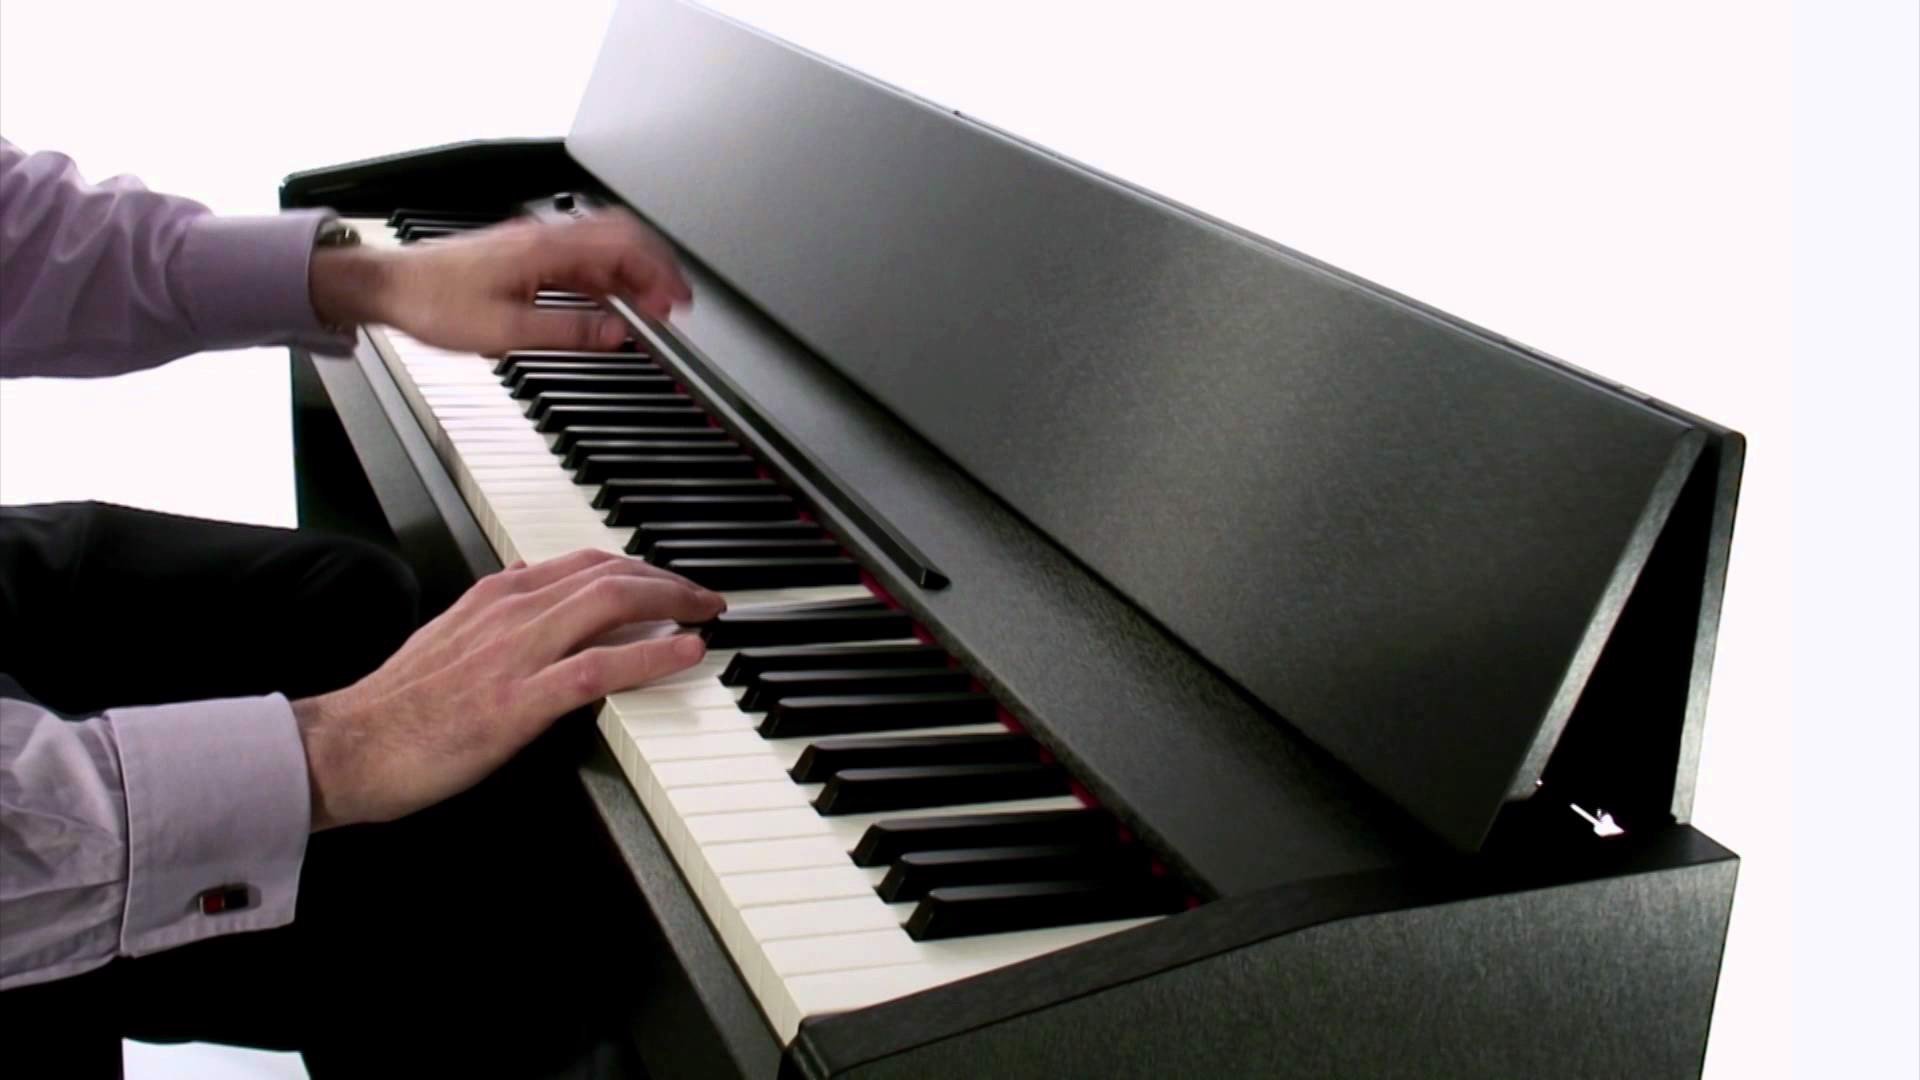 Đàn Piano Điện Roland F-120